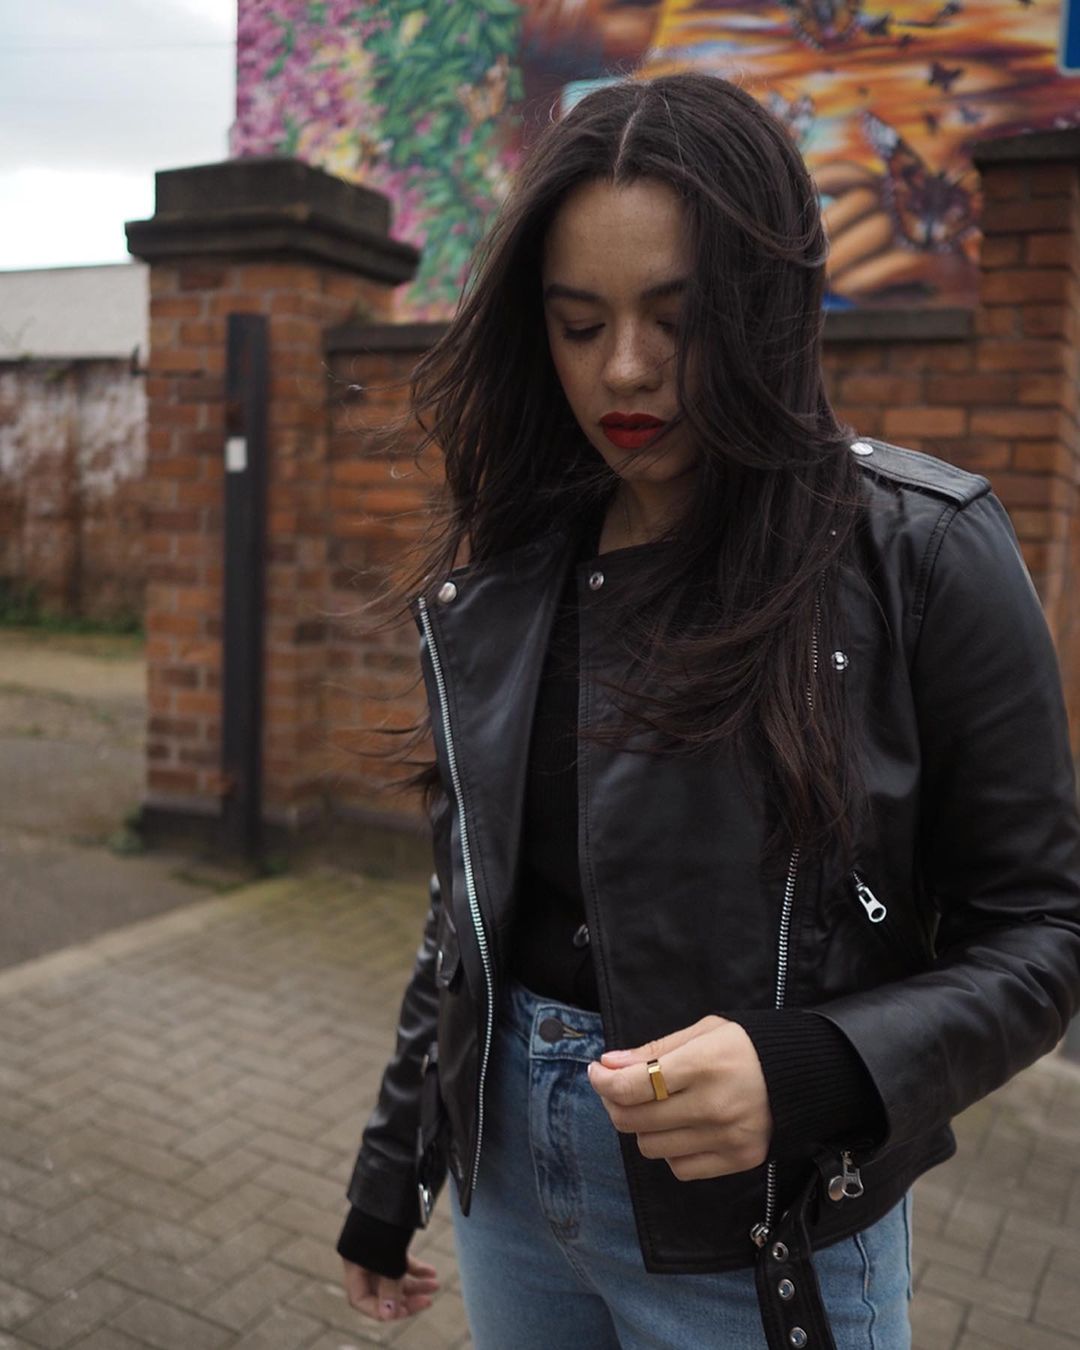 British Fashion Essentials: @astyleedit wears a leather biker jacket